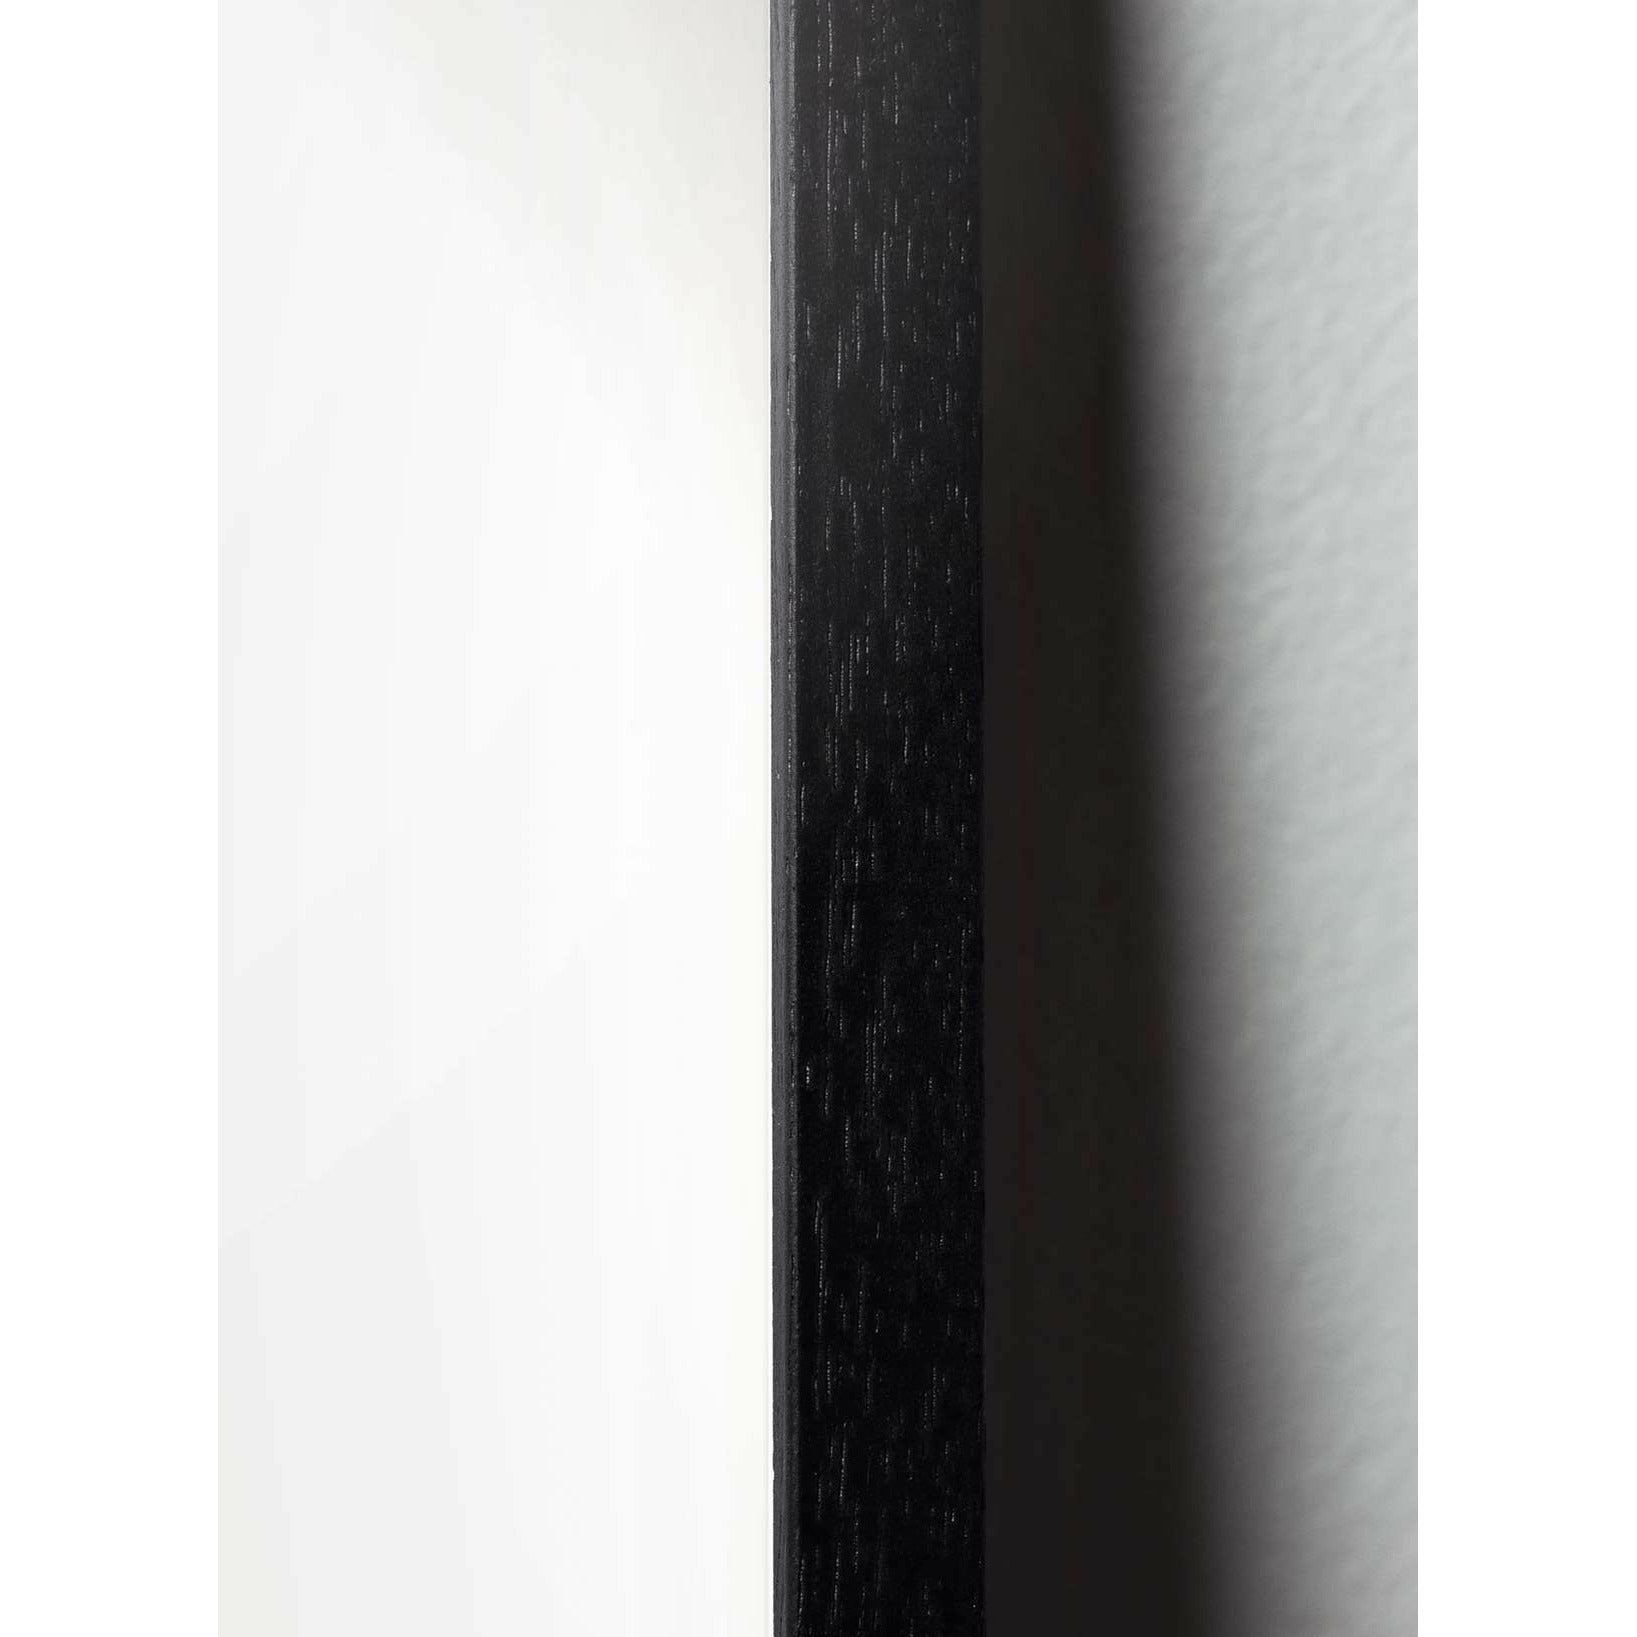 Brainchild Drop designikonplakat, ramme lavet af sort lakeret træ 50 x70 cm, lilla